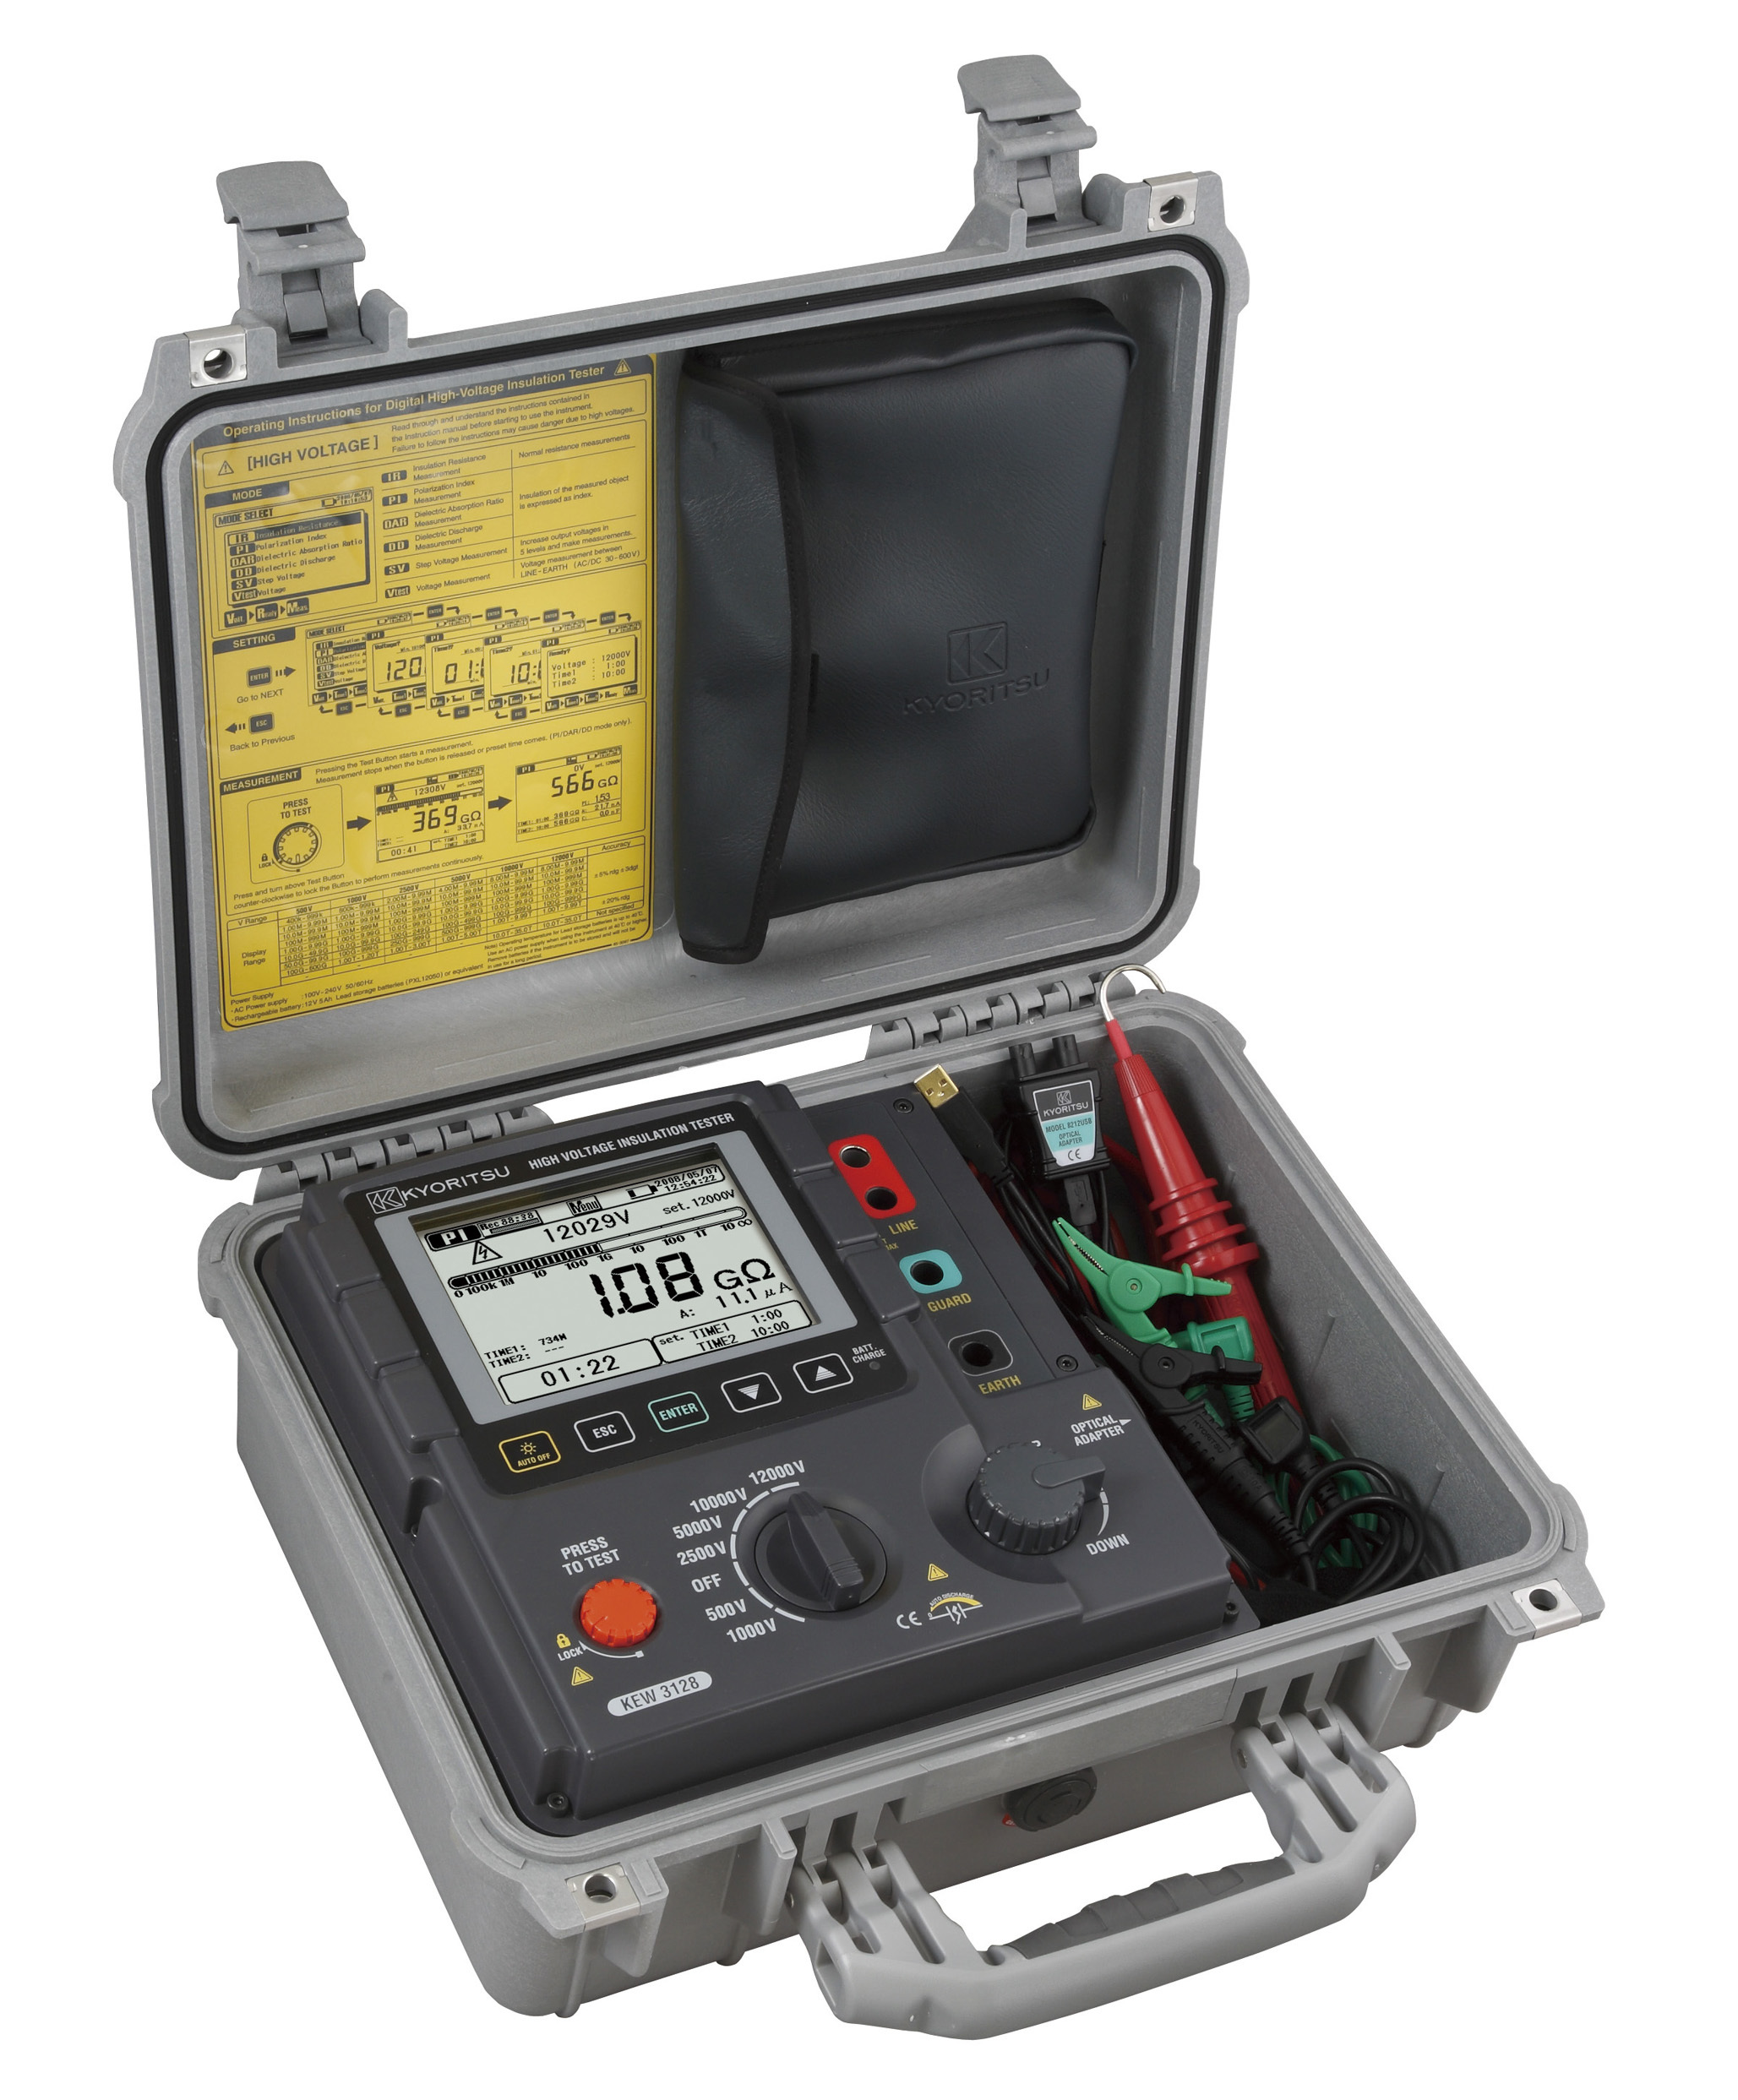 共立電気計器 Iorリーク電流クランプセンサ KEW 8177 共立 測定 電気 計測 計測器 測定器 電圧 - 3